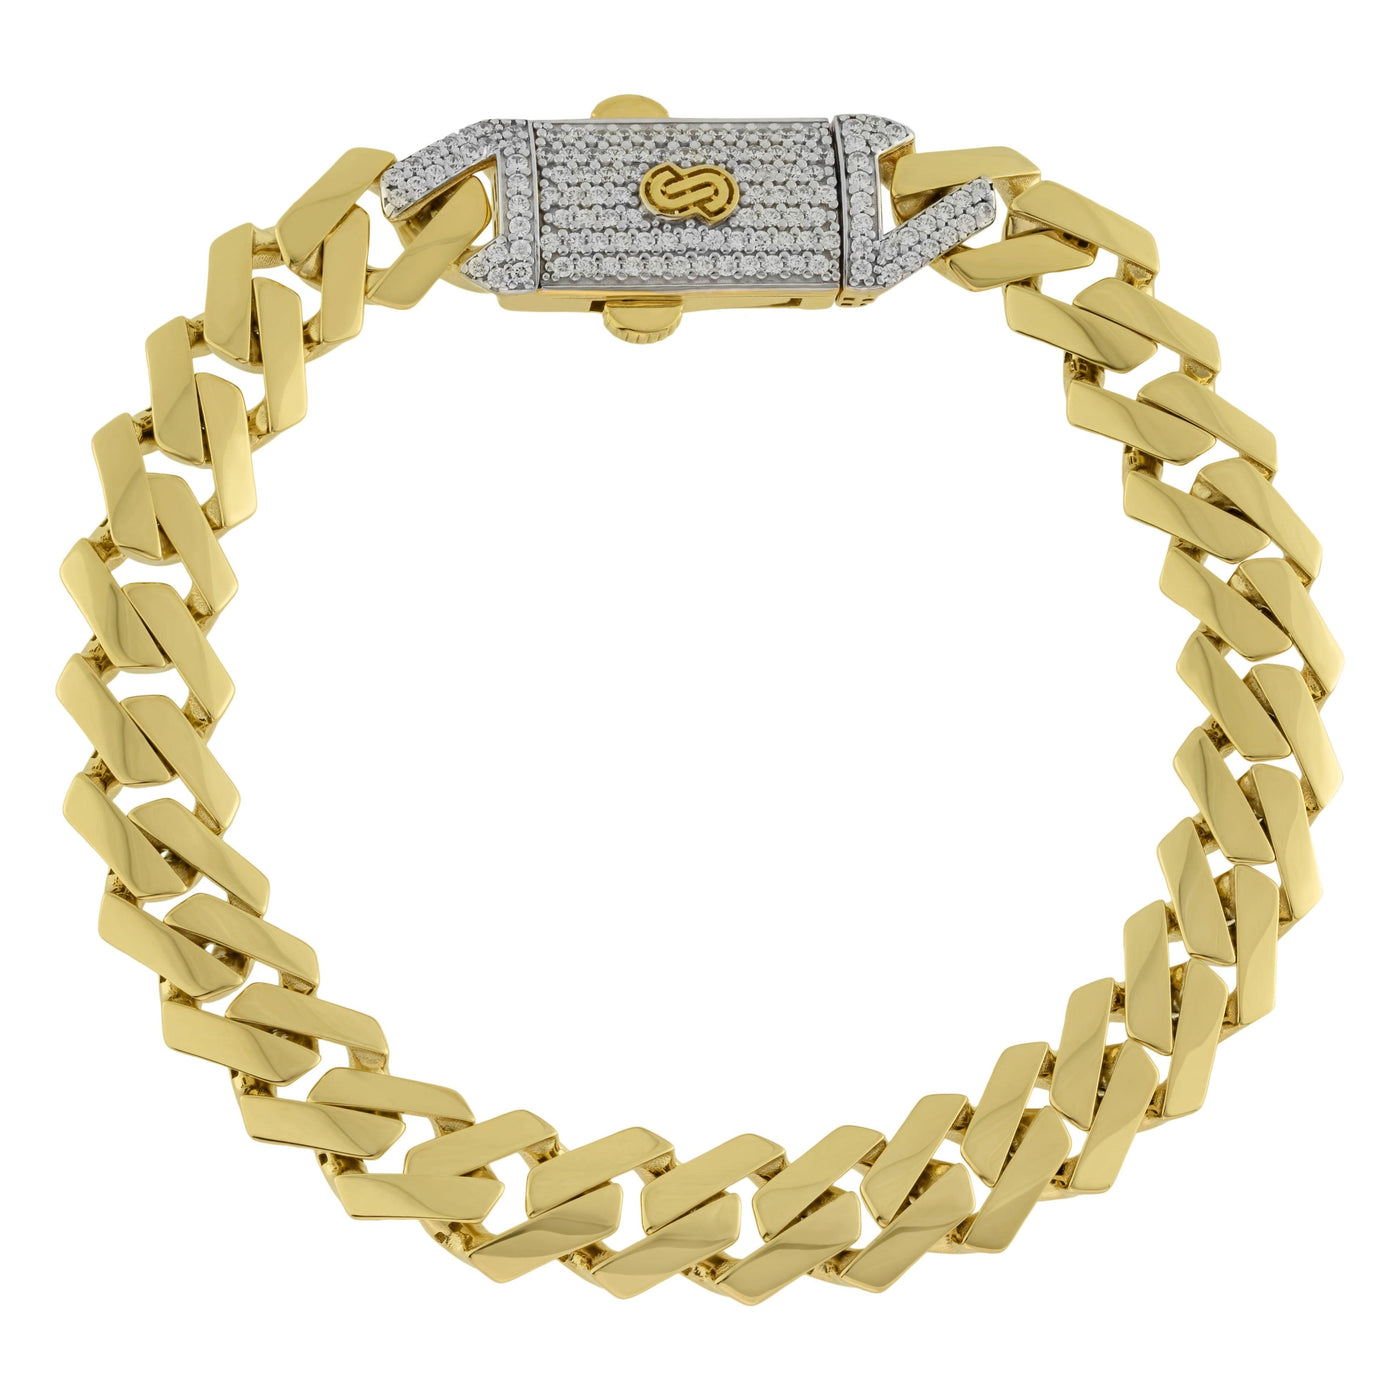 Monaco Chain Miami Cuban Link CZ Lock Bracelet 14K Yellow Gold - Hollow - bayamjewelry